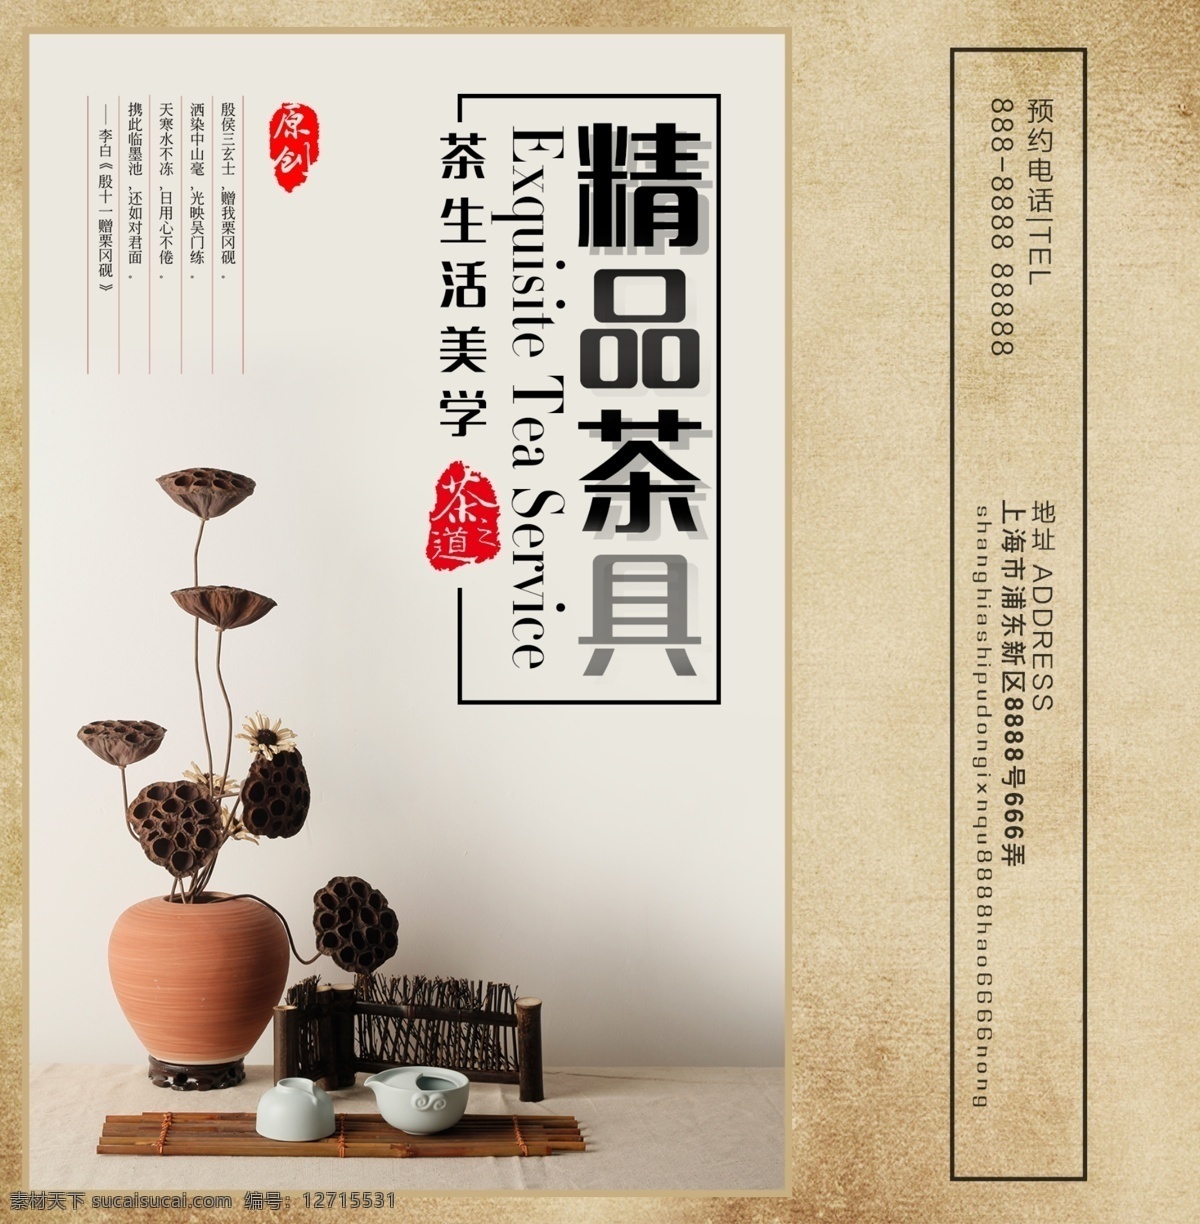 茶壶 茶具 茶叶 大气 简约 礼品 新年 中国风 精品 手提袋 黄色 中国 风 茶文化 礼品包装